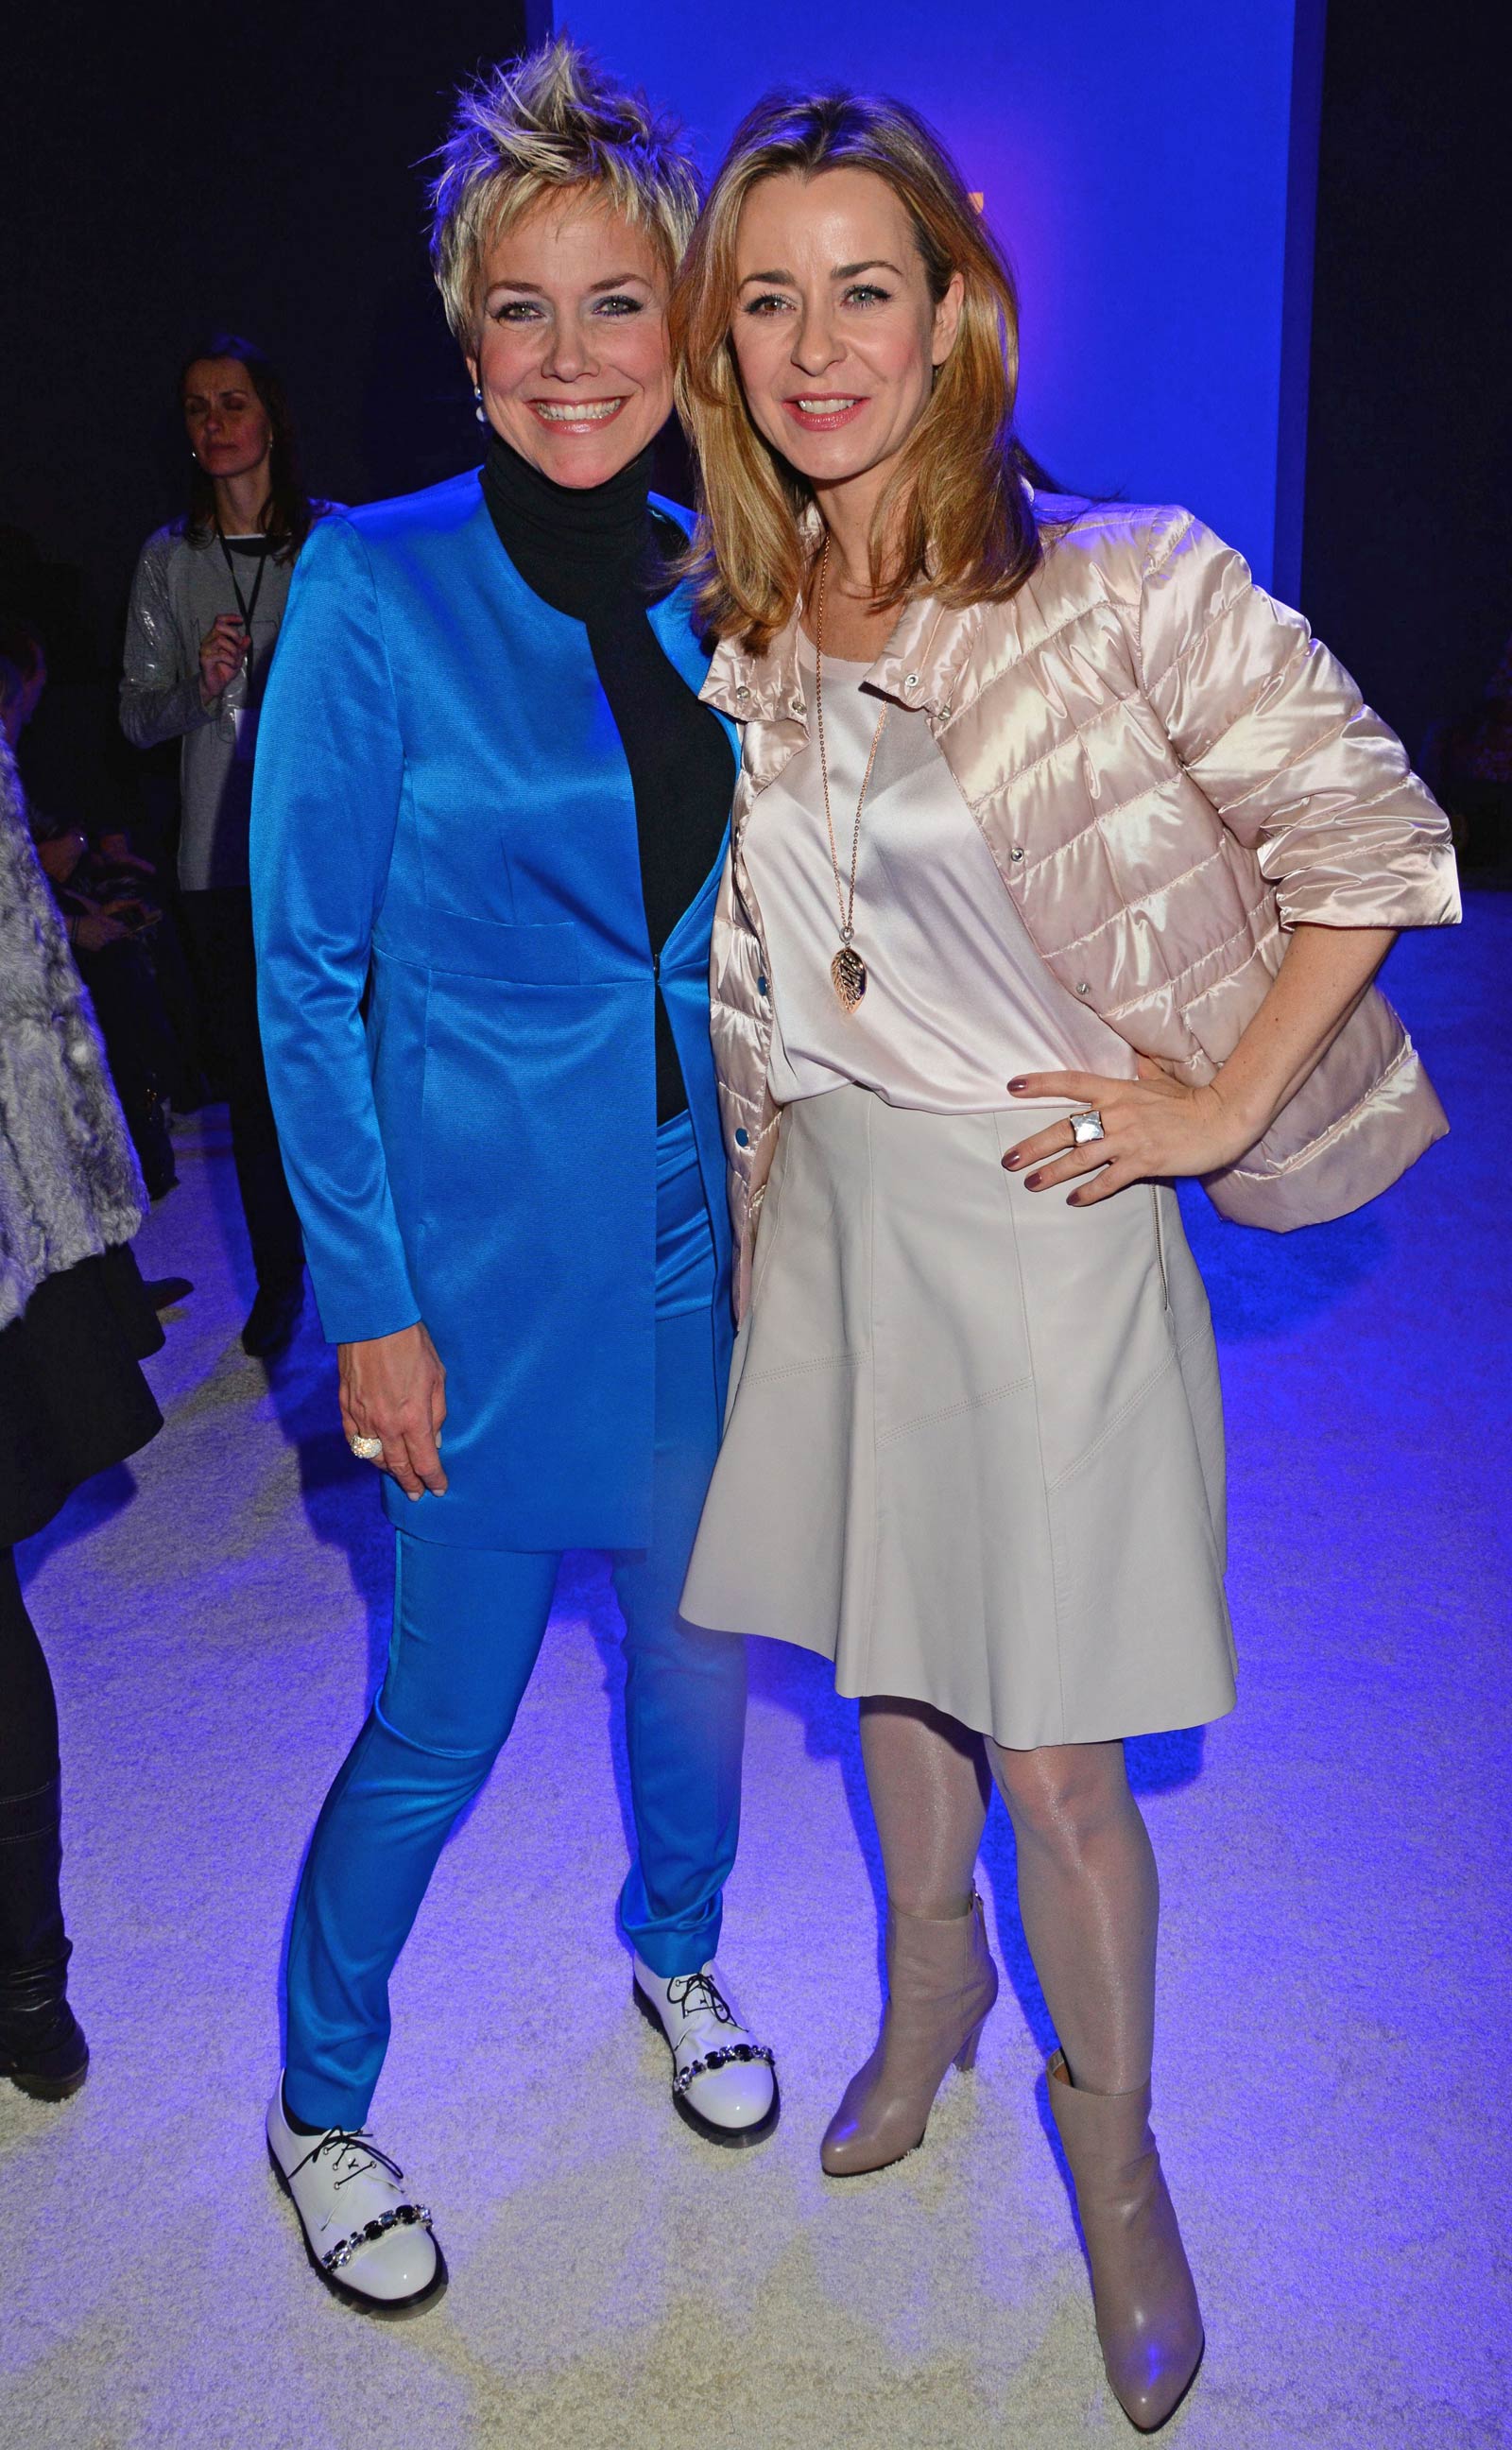 Bettina Cramer attends Mercedes-Benz Fashion Week